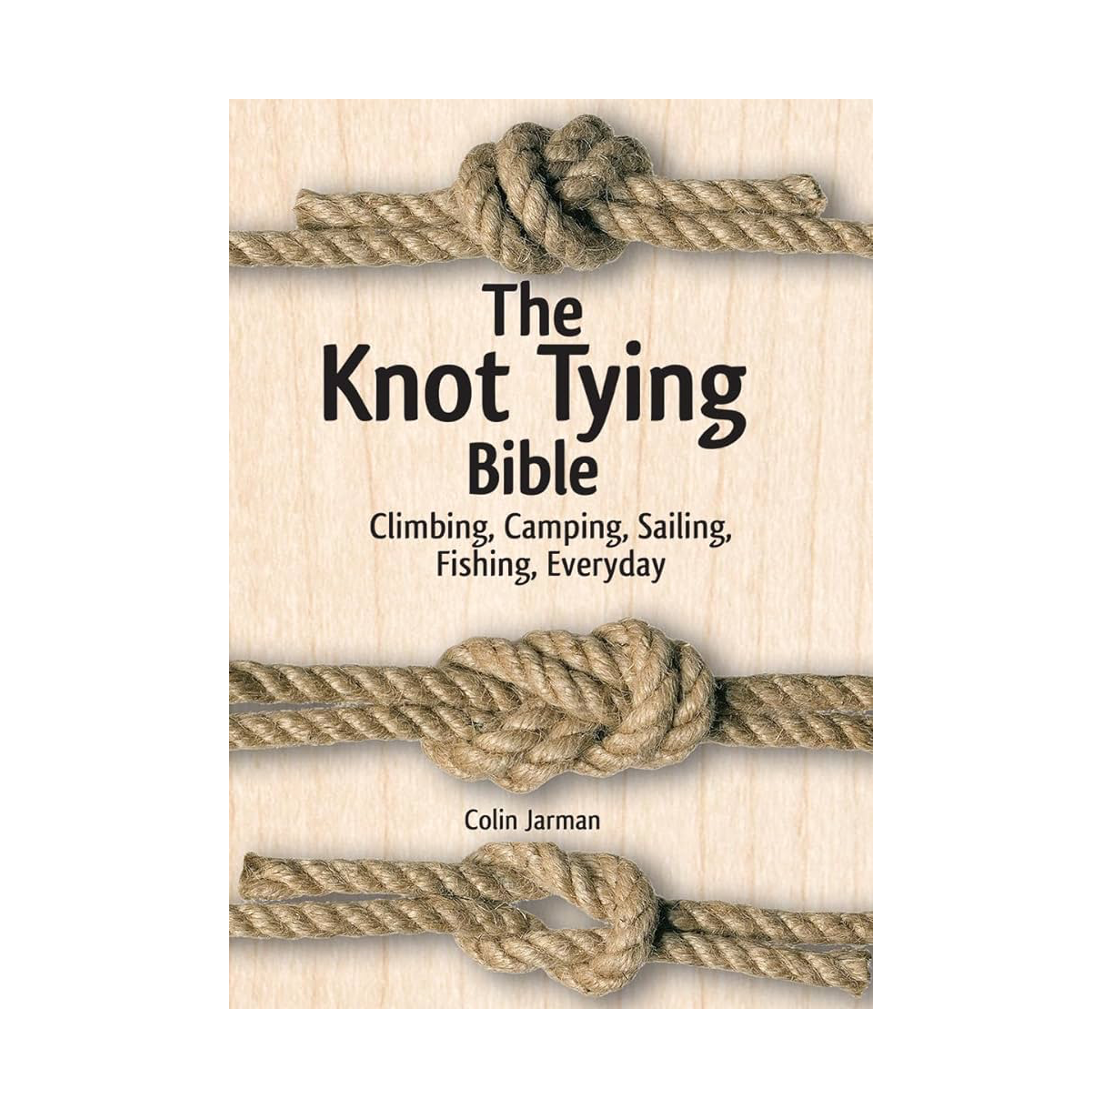 The Knot Tying Bible: Climbing, Camping, Sailing, Fishing